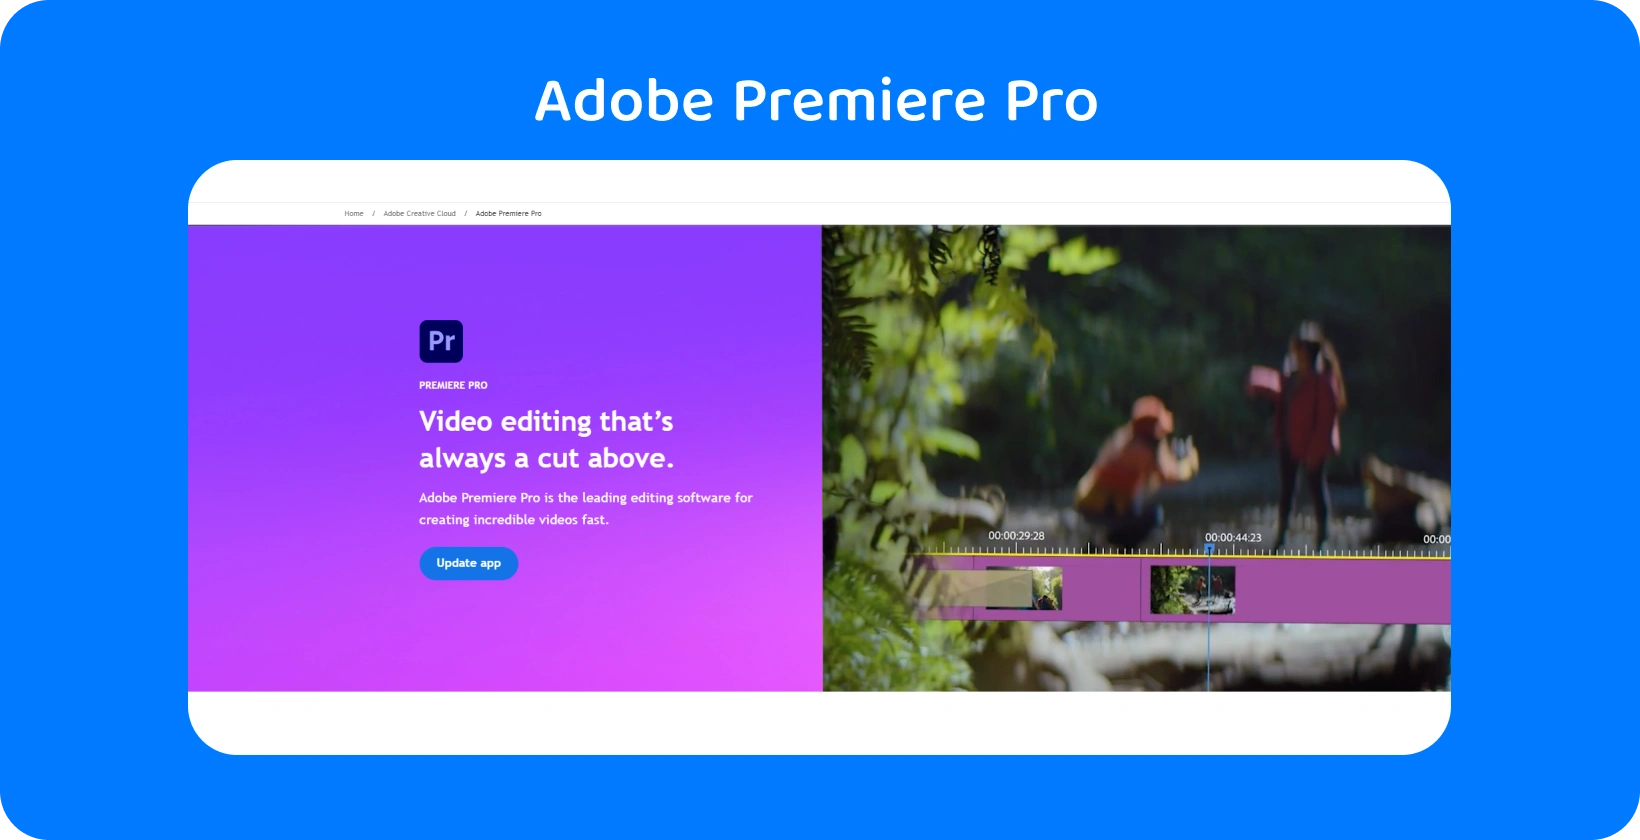 Adobe Premiere Pro interface exibindo seus recursos avançados de edição de vídeo, ideal para edições rápidas e precisas.